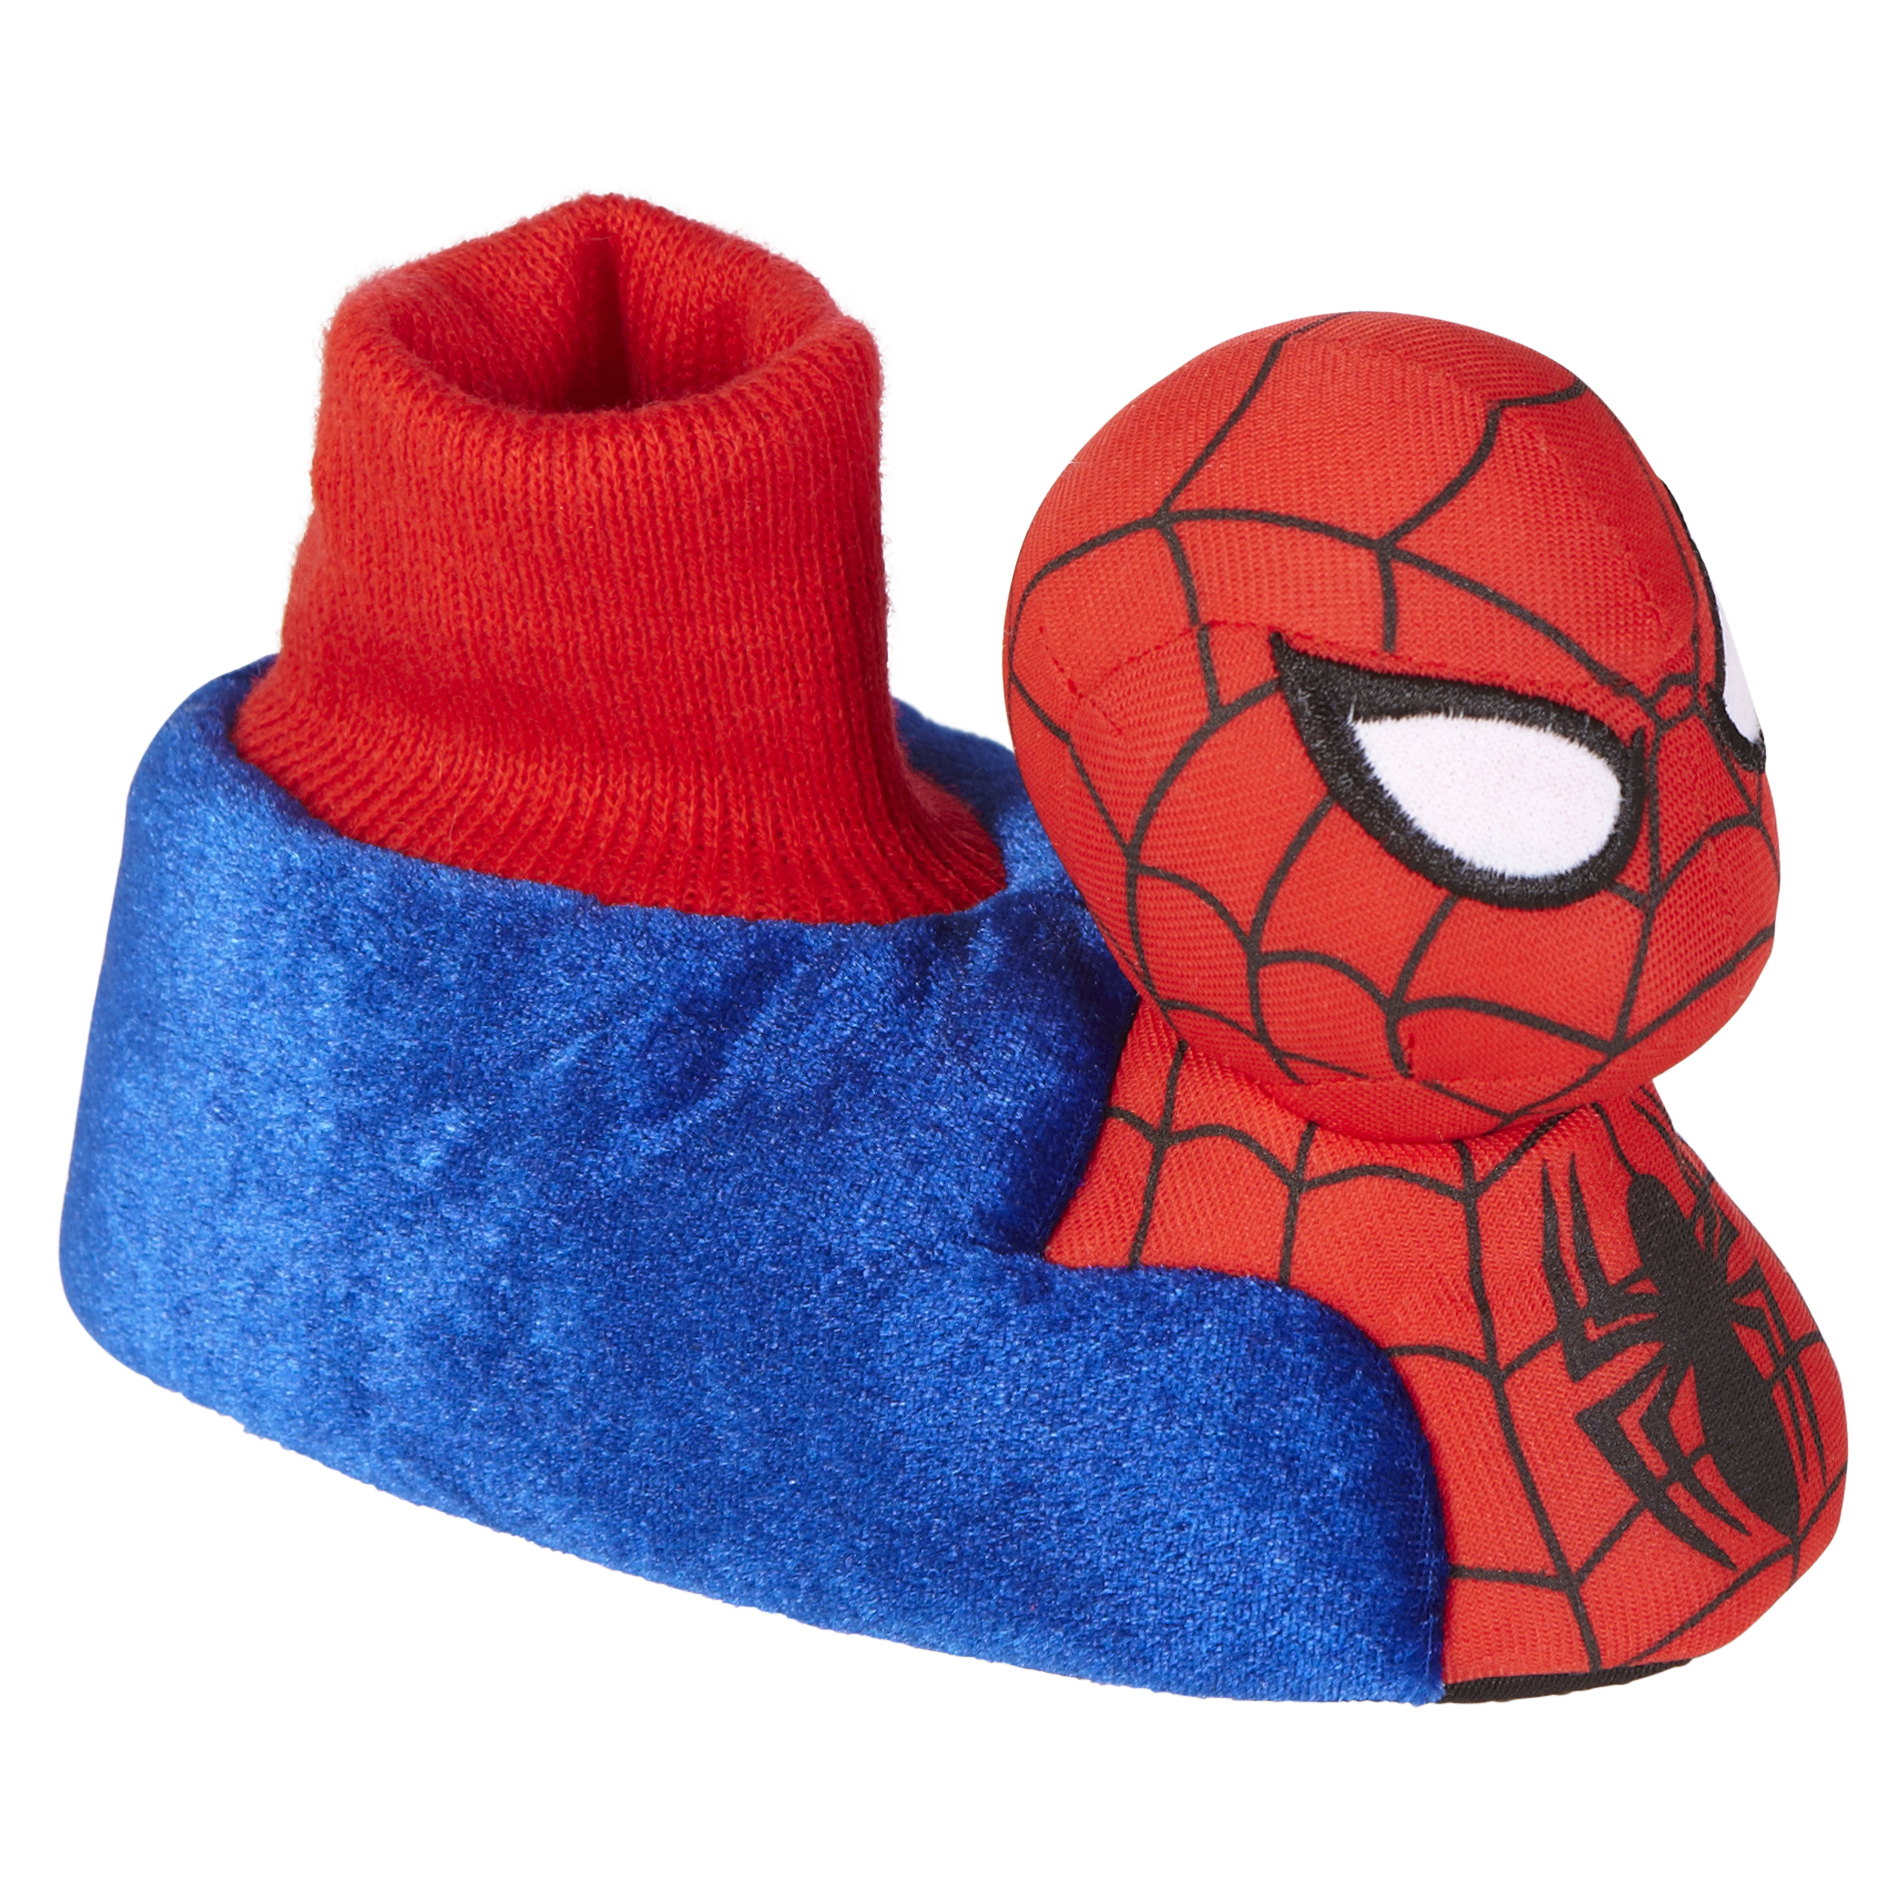 Disney Toddler Boy's Slipper Spider-Man - Red